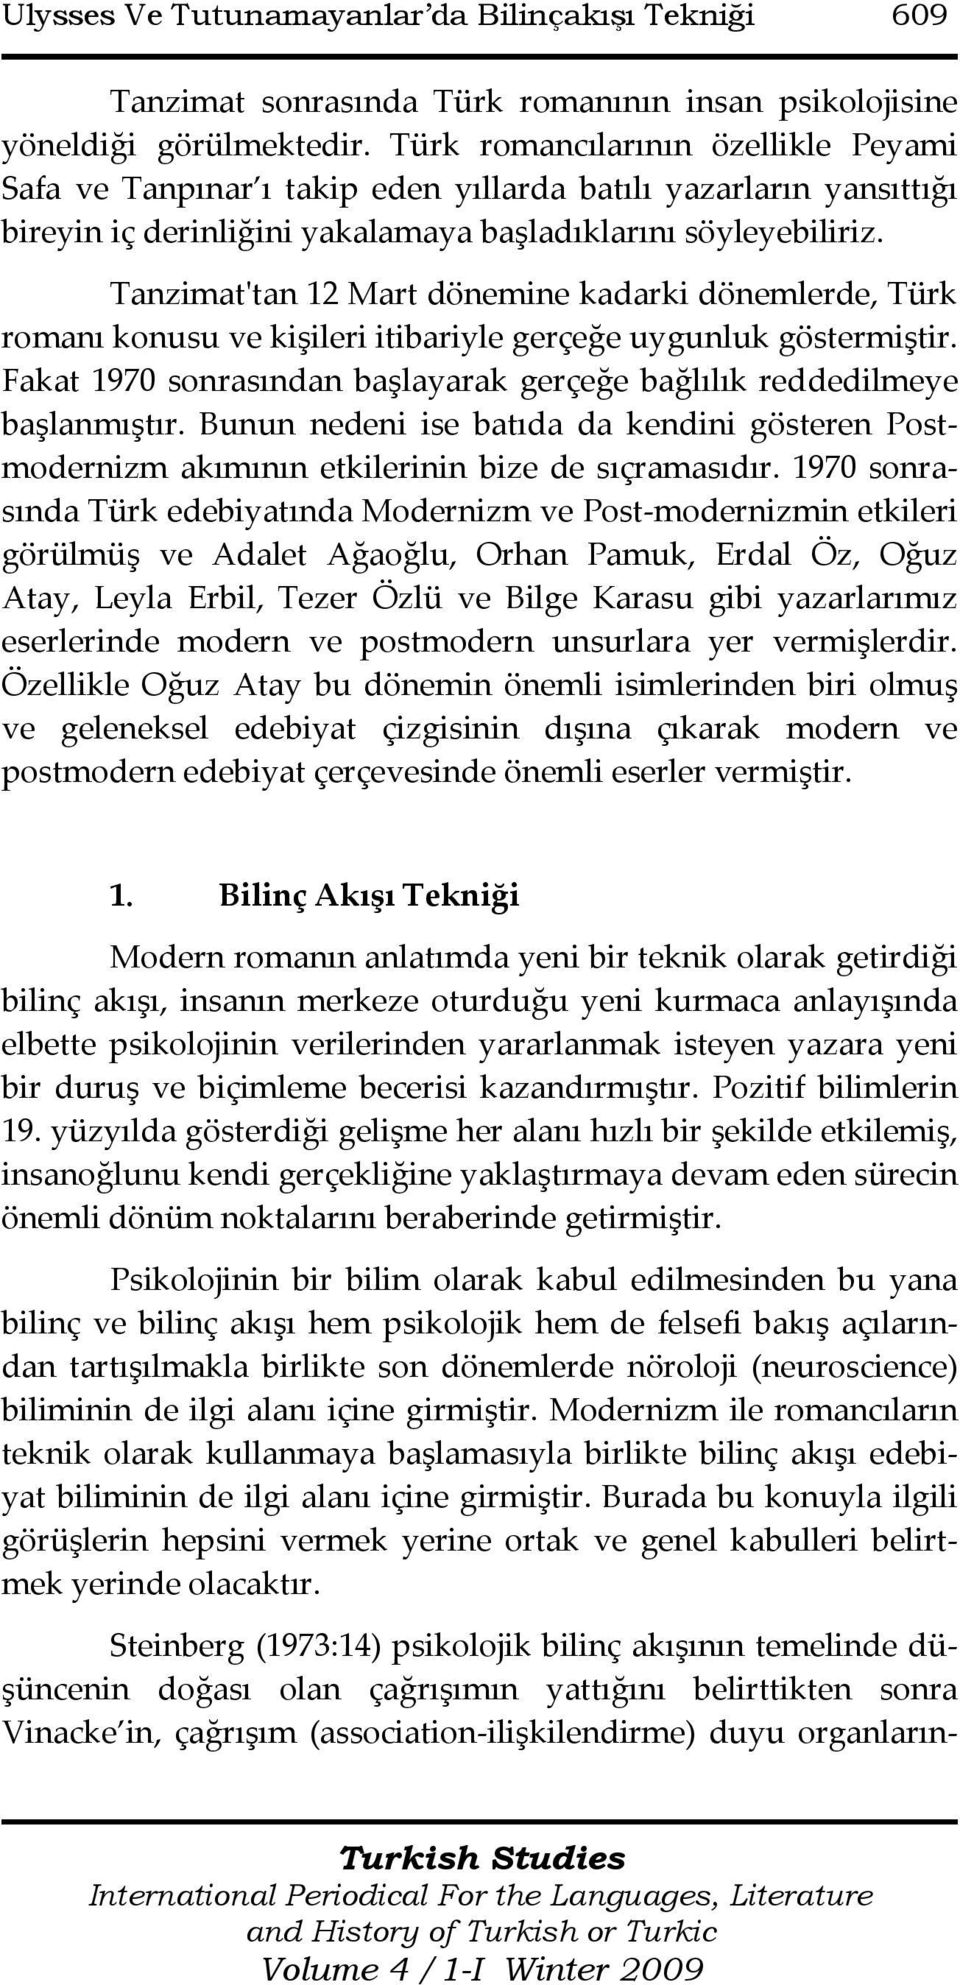 Tanzimat'tan 12 Mart dönemine kadarki dönemlerde, Türk romanı konusu ve kişileri itibariyle gerçeğe uygunluk göstermiştir. Fakat 1970 sonrasından başlayarak gerçeğe bağlılık reddedilmeye başlanmıştır.